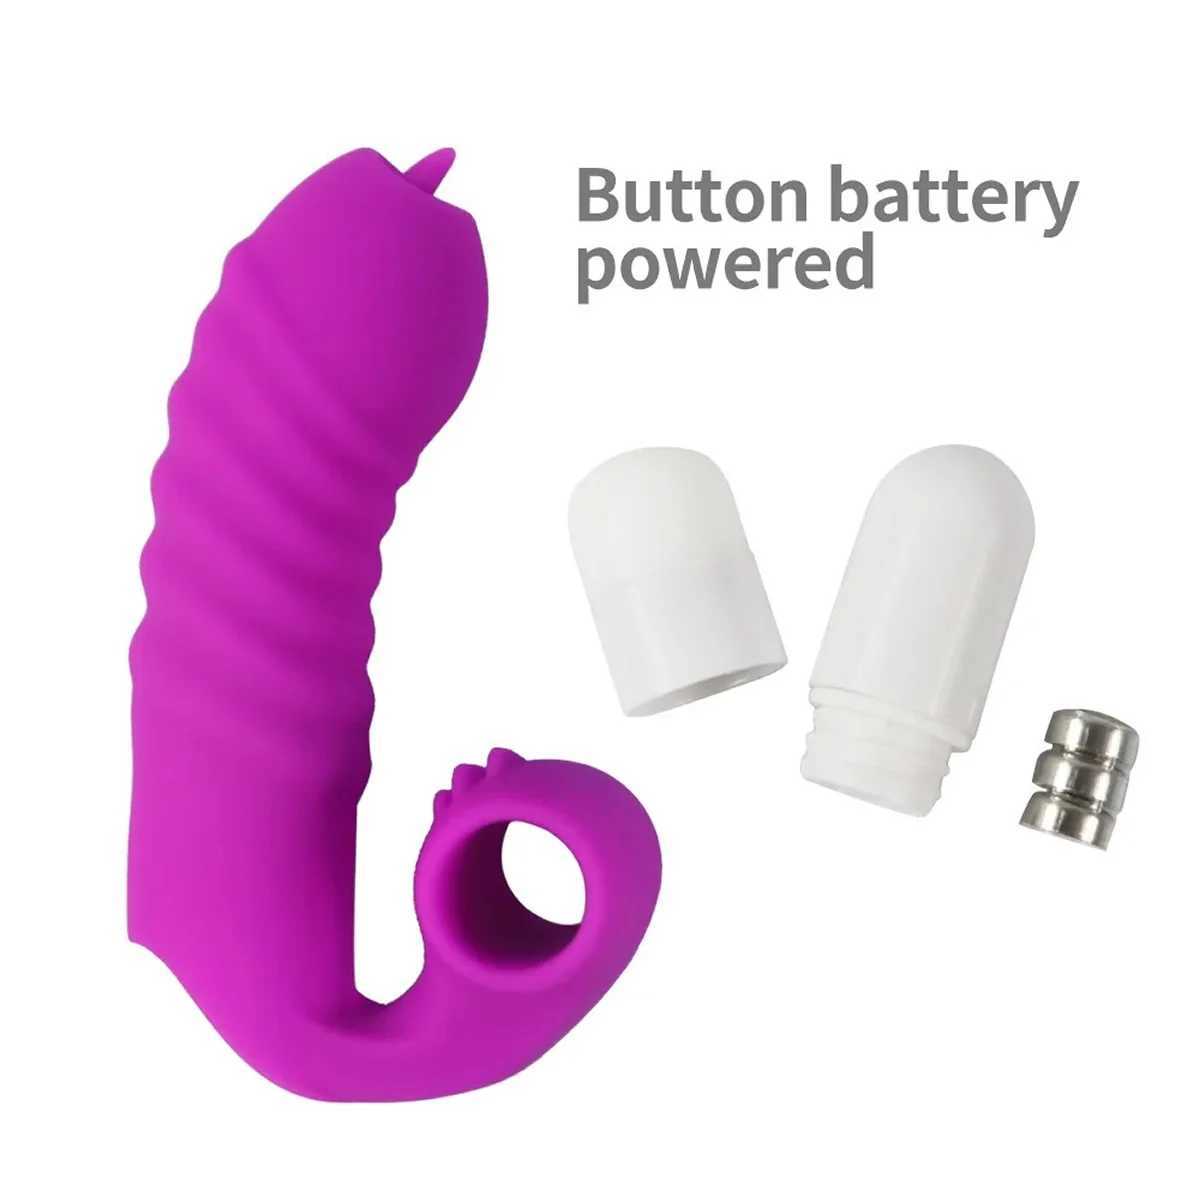 バイブレーターフィンガーカバーバイブレーターの舌舐めマッサージャーセックスおもちゃの女性のためのgスポットオルガスムクリトリス刺激カップル